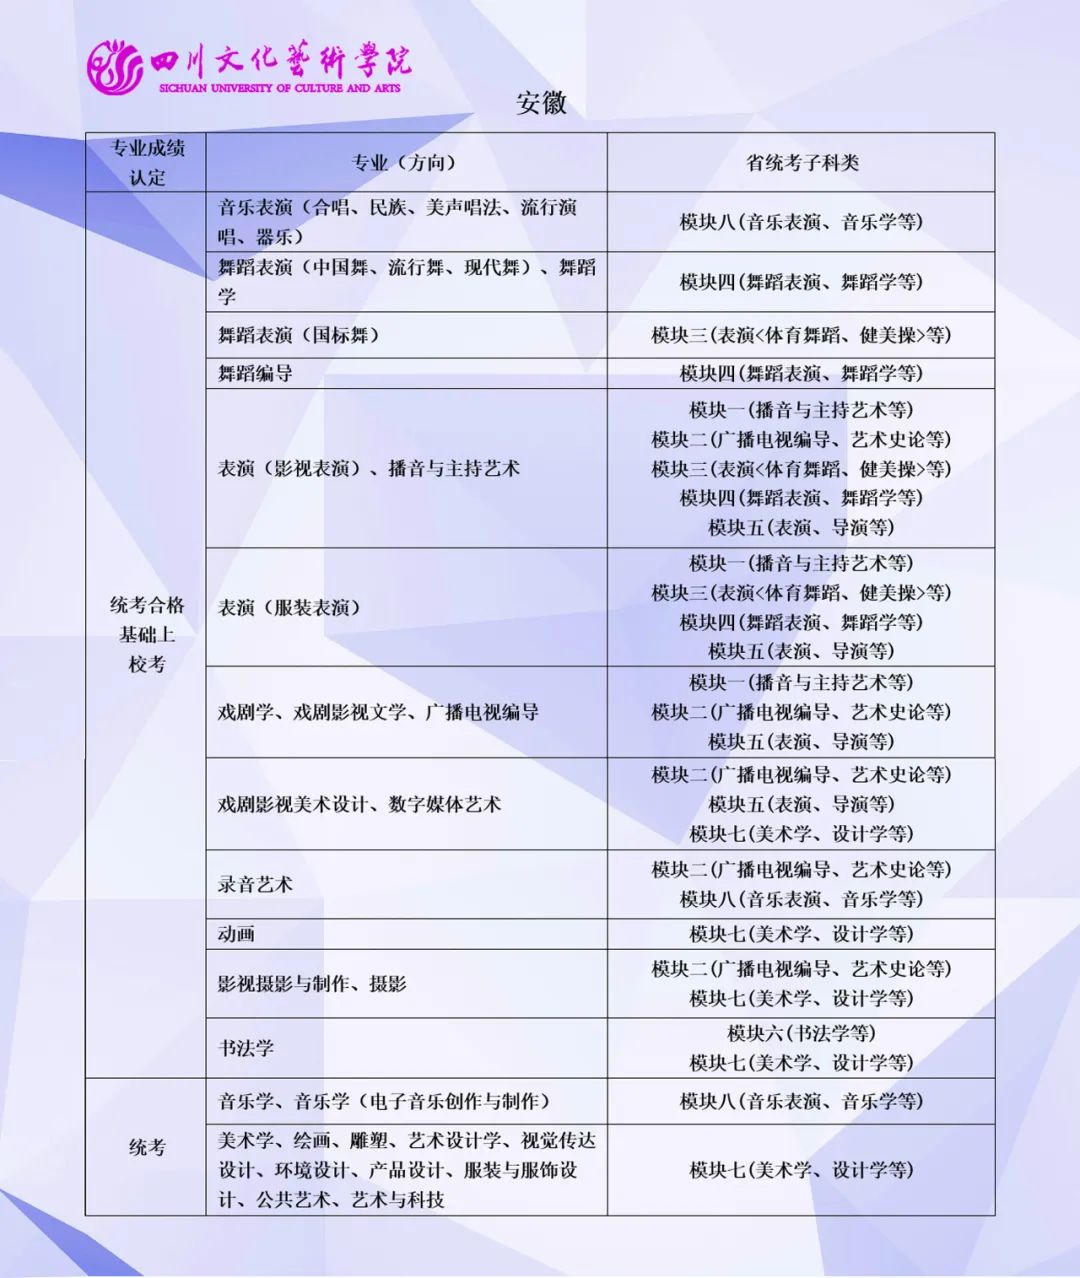 2023年四川文化艺术学院音乐舞蹈类本科专业与省级统考子科类对照关系表